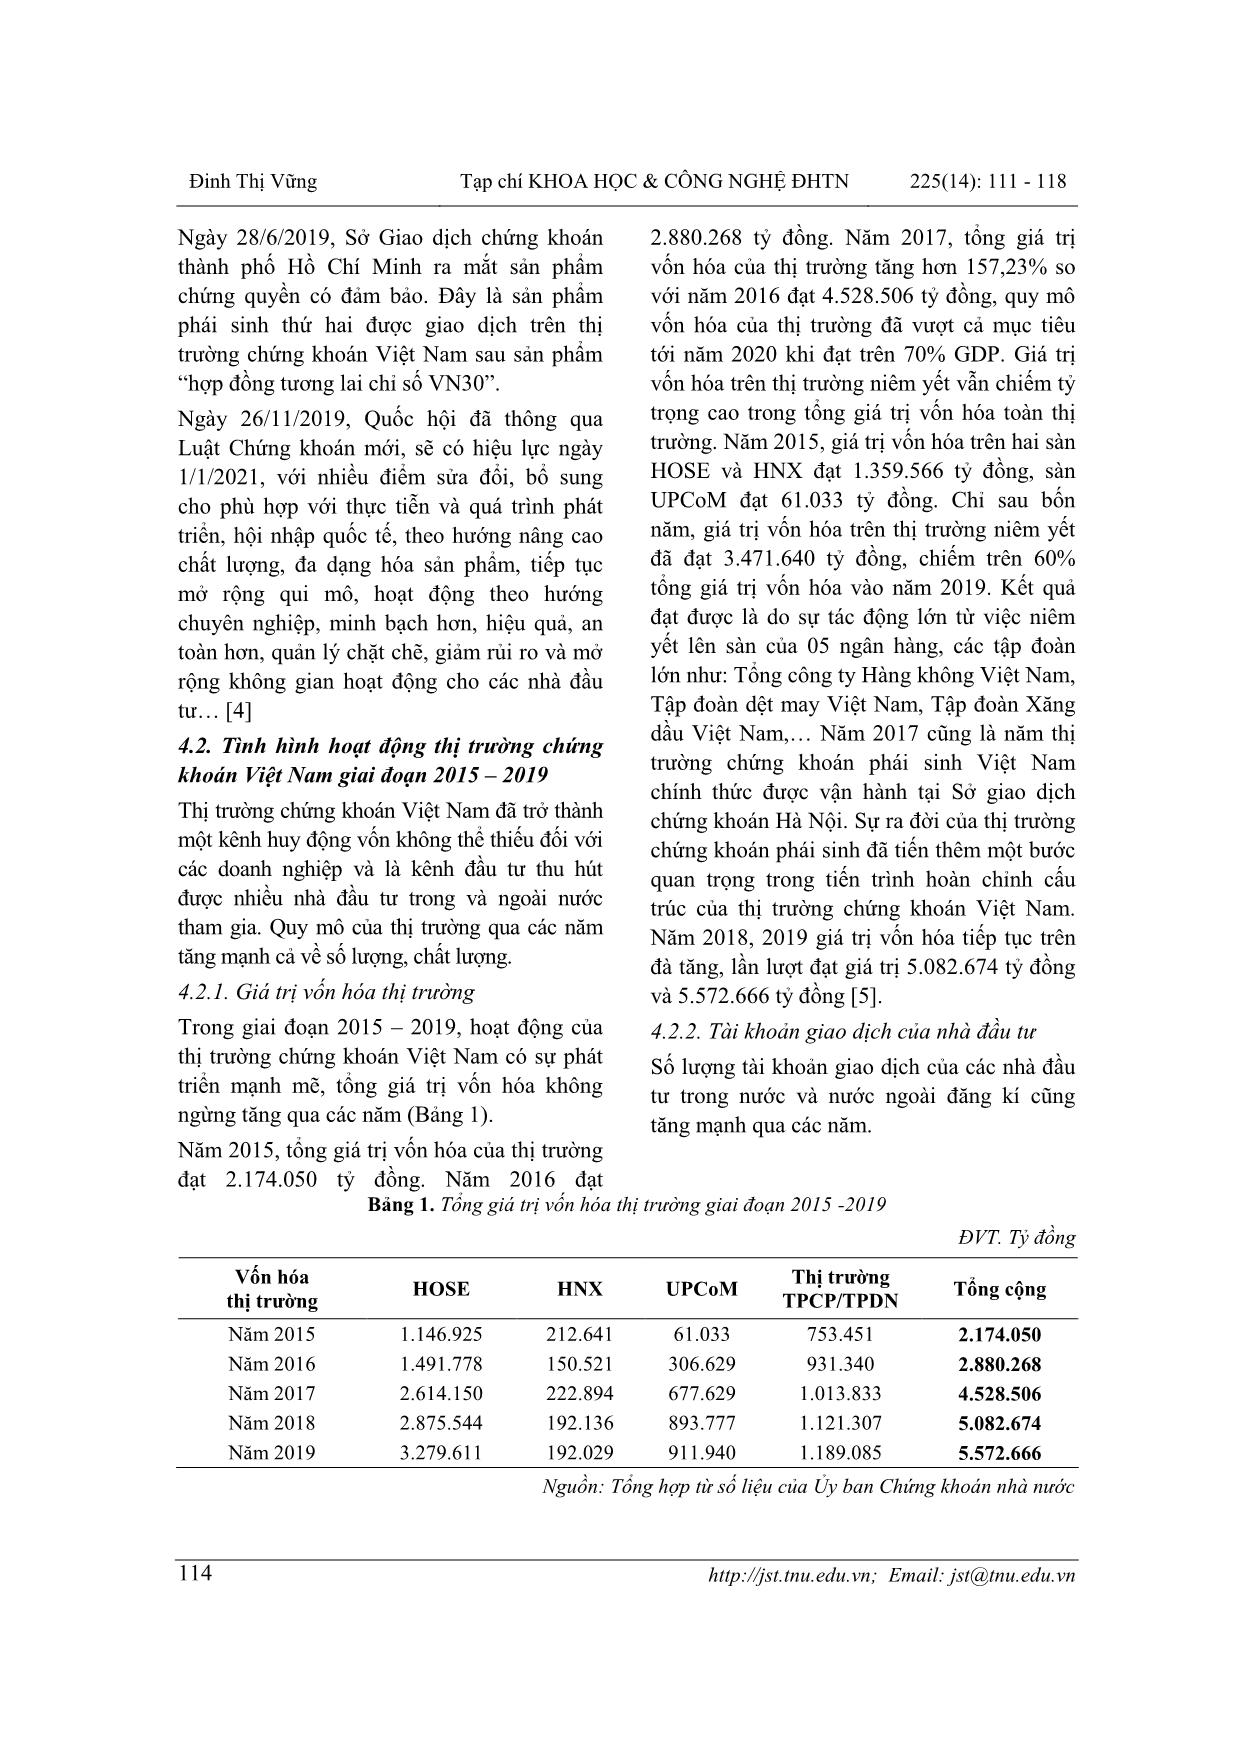 Phân tích hoạt động của thị trường chứng khoán Việt Nam những năm gần đây trang 4